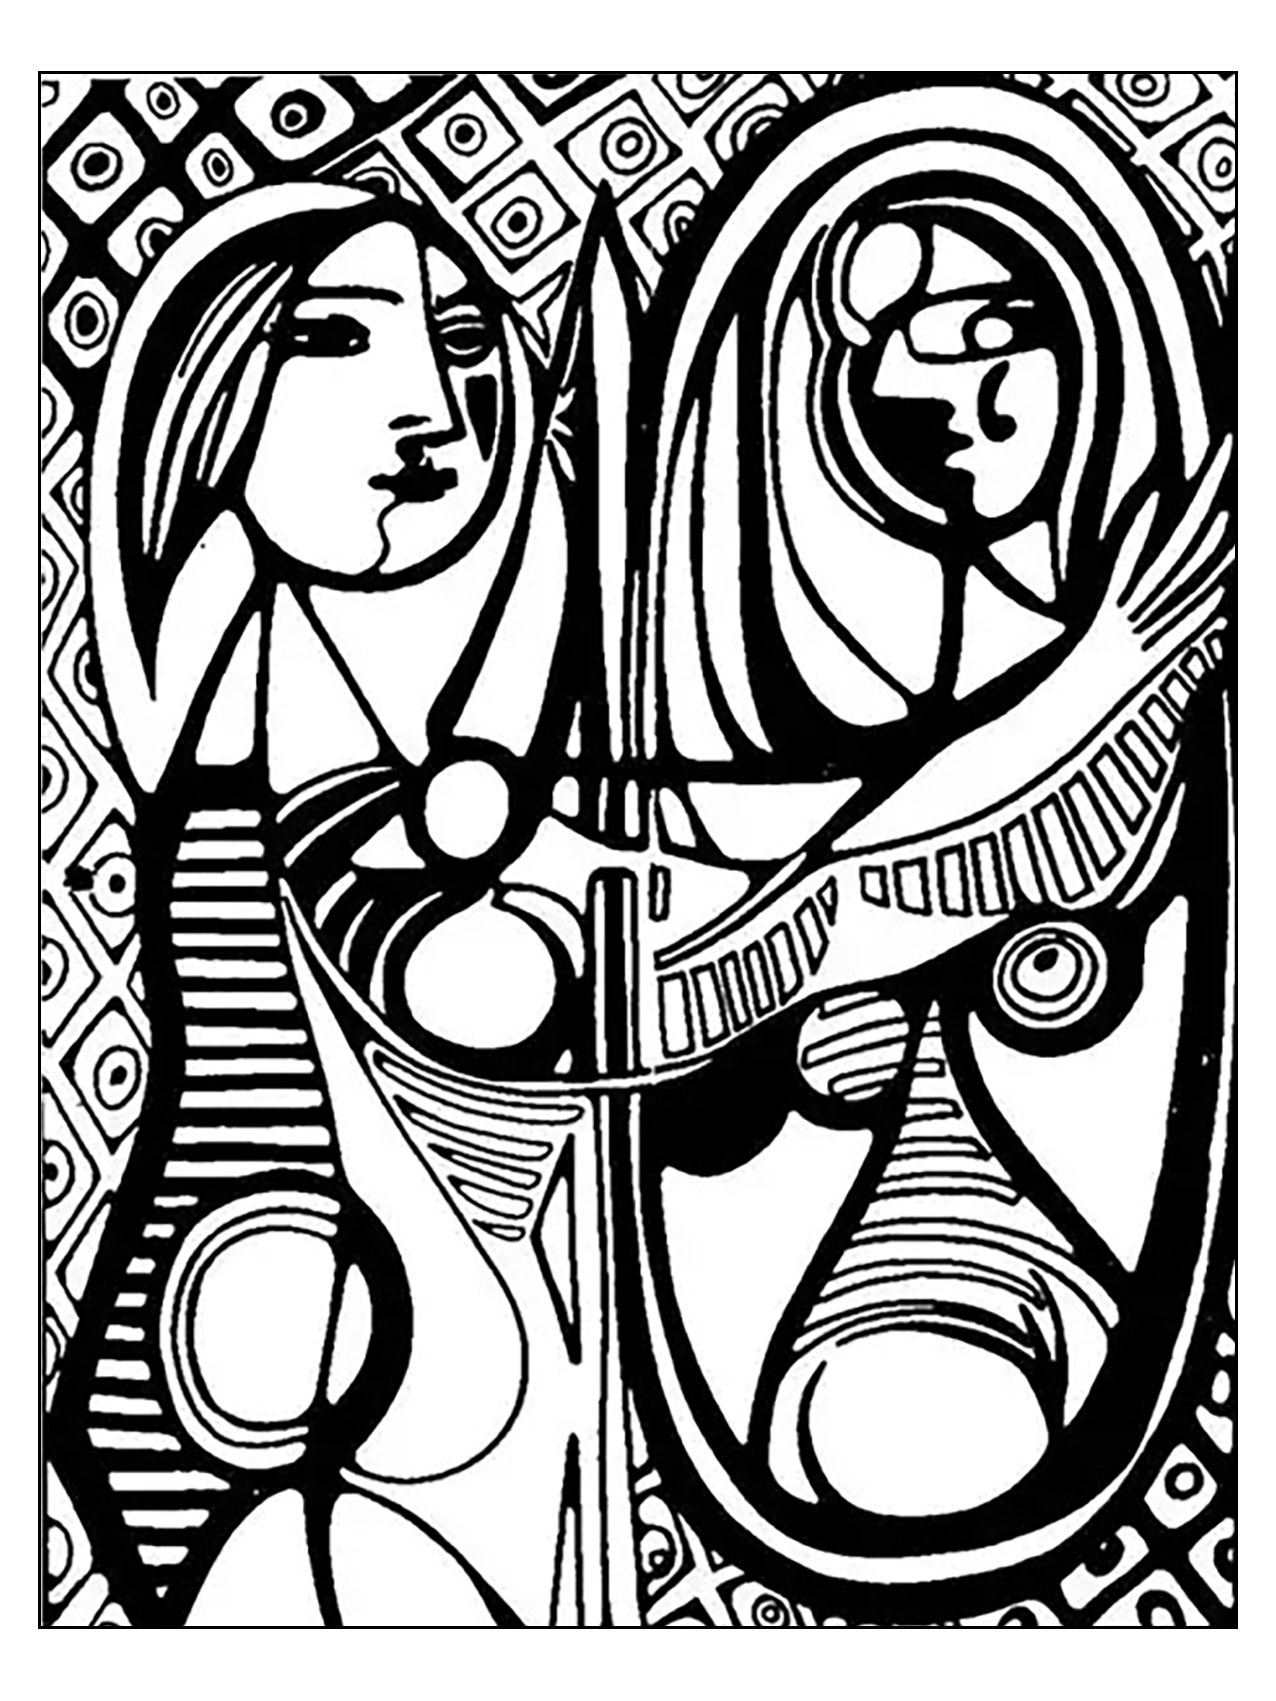 Página para colorear inspirada en 'Muchacha ante un espejo' de Picasso (1932)